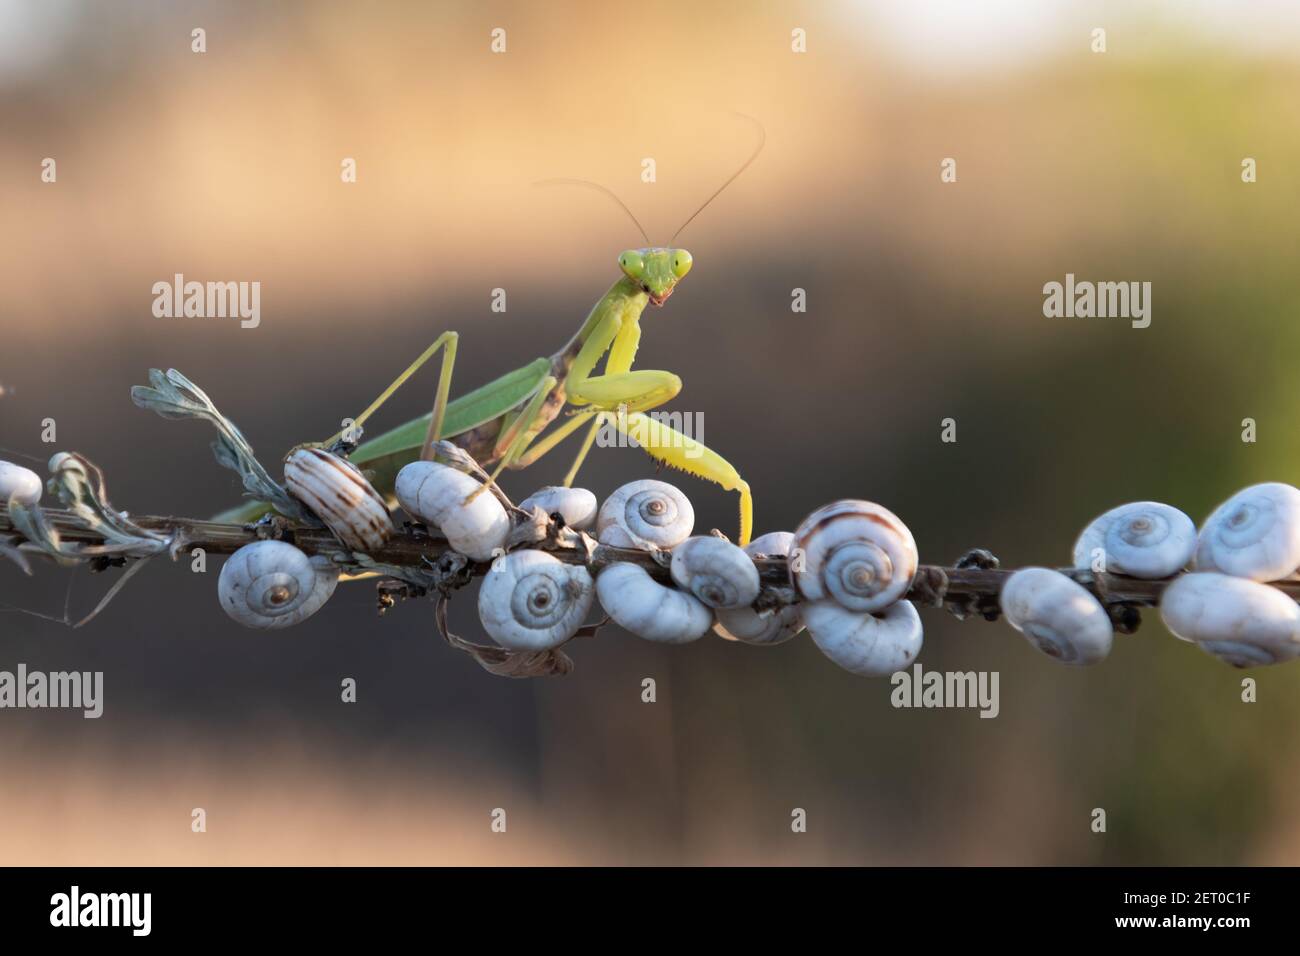 European Mantis religiosa ou priant Mantis sur Twigg gros plan. Prise de vue macro. Photographie d'insectes Banque D'Images